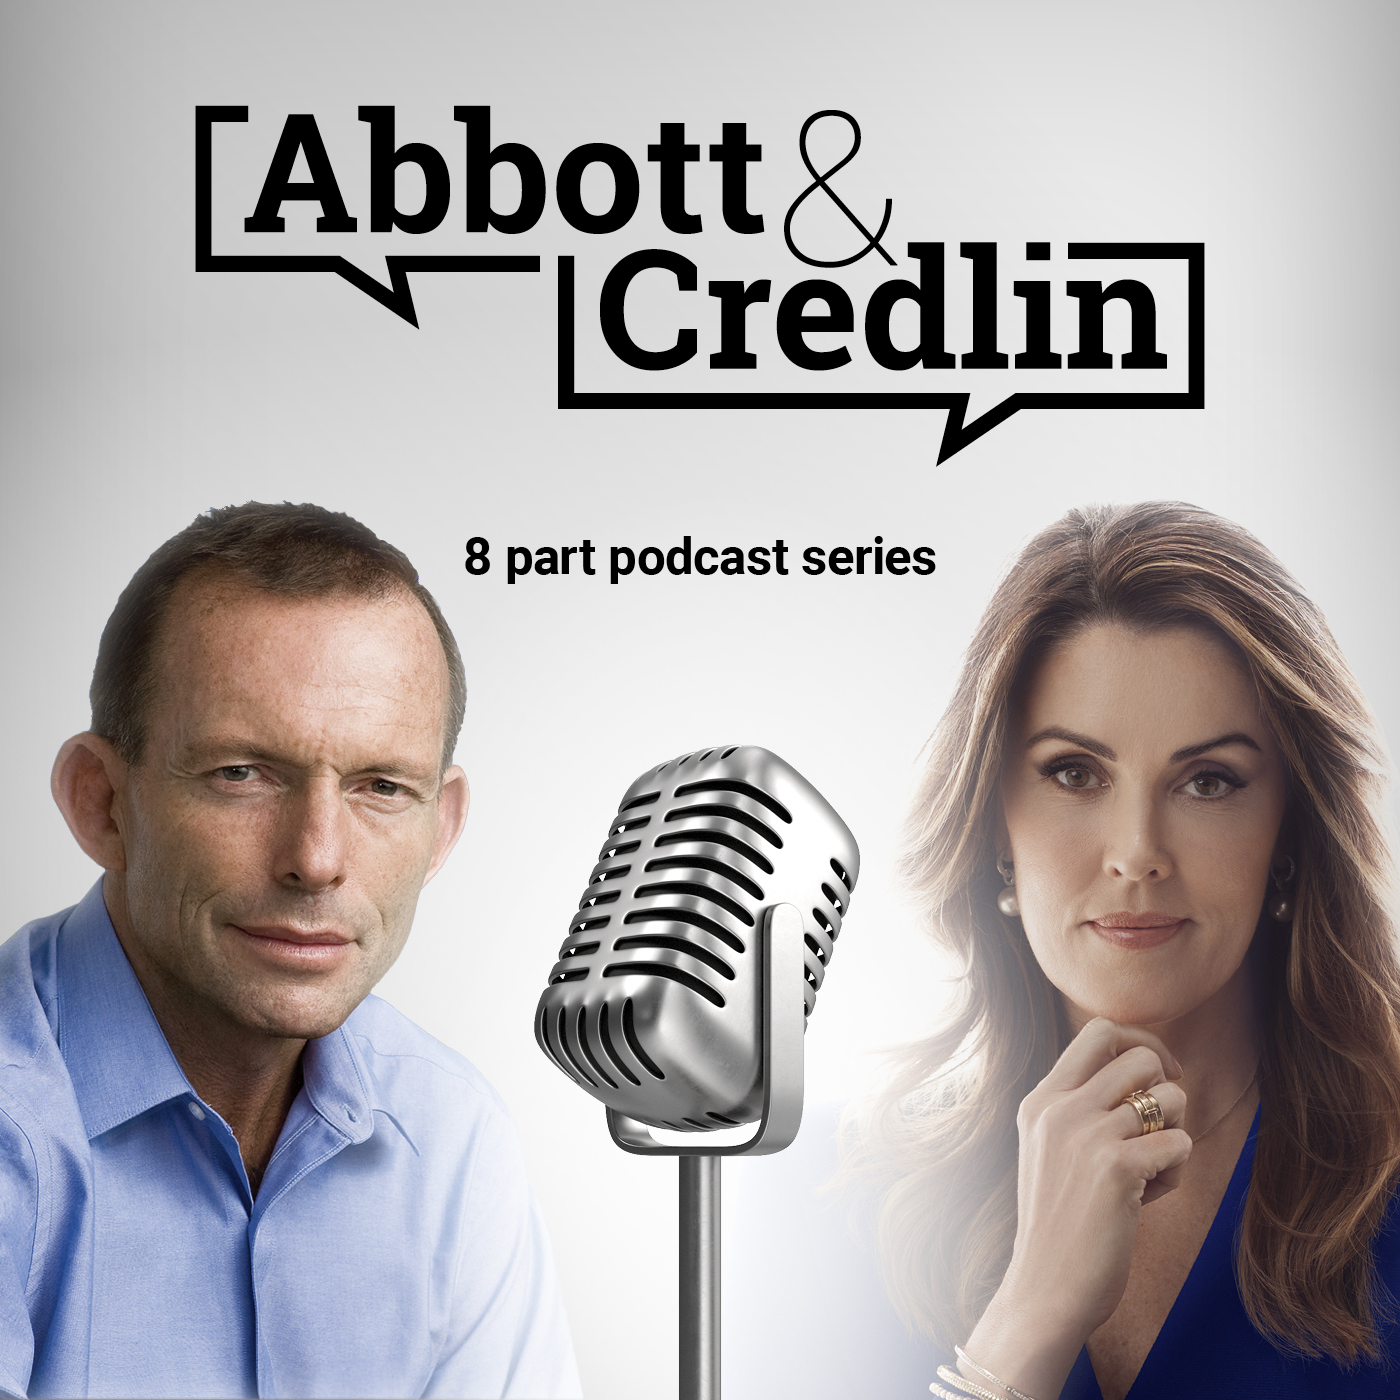 Abbott & Credlin |  Episode 2